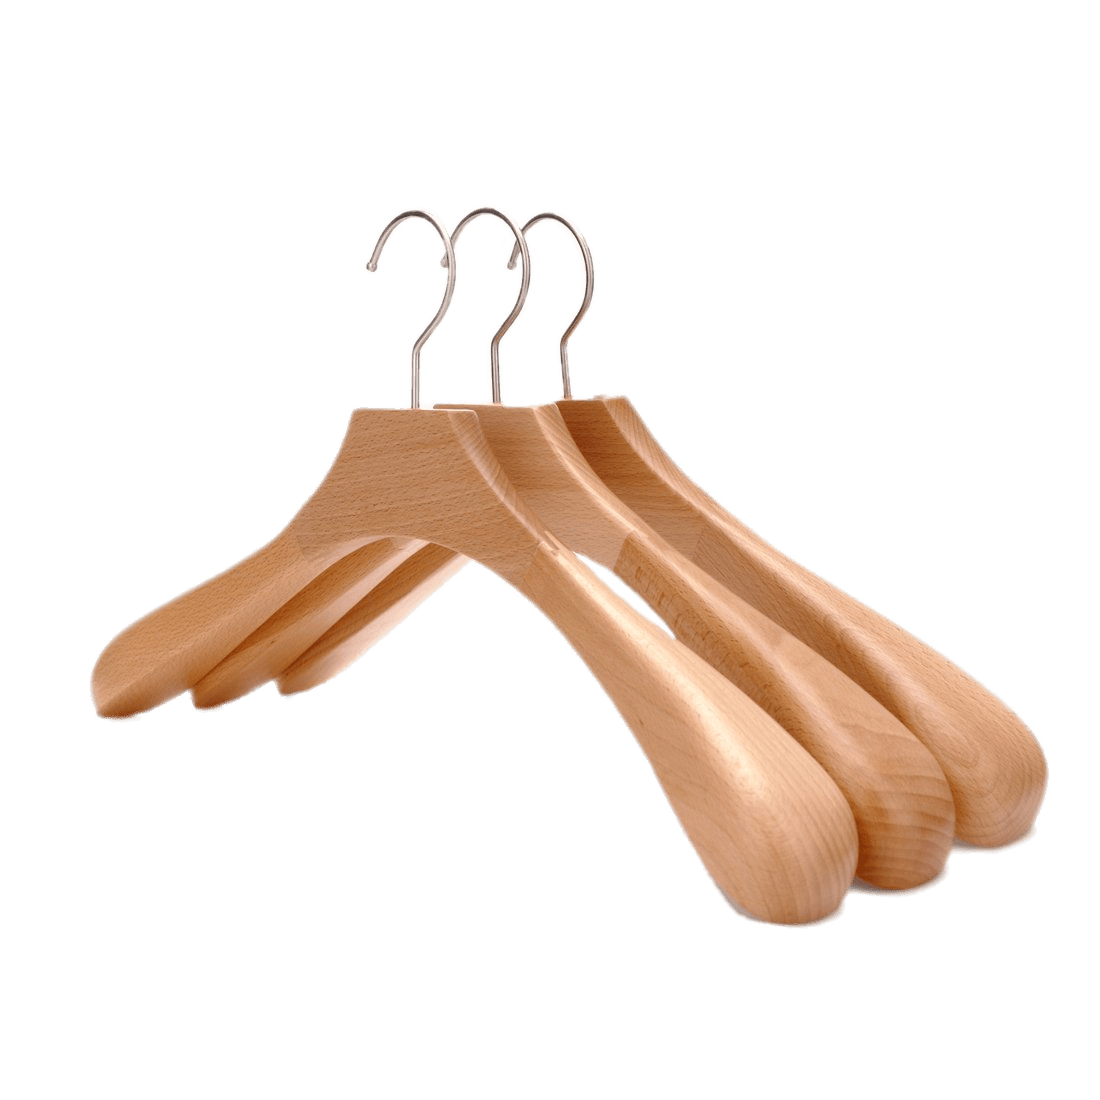 Hanger clipart plastic, Hanger plastic Transparent FREE for download on WebStockReview 2021